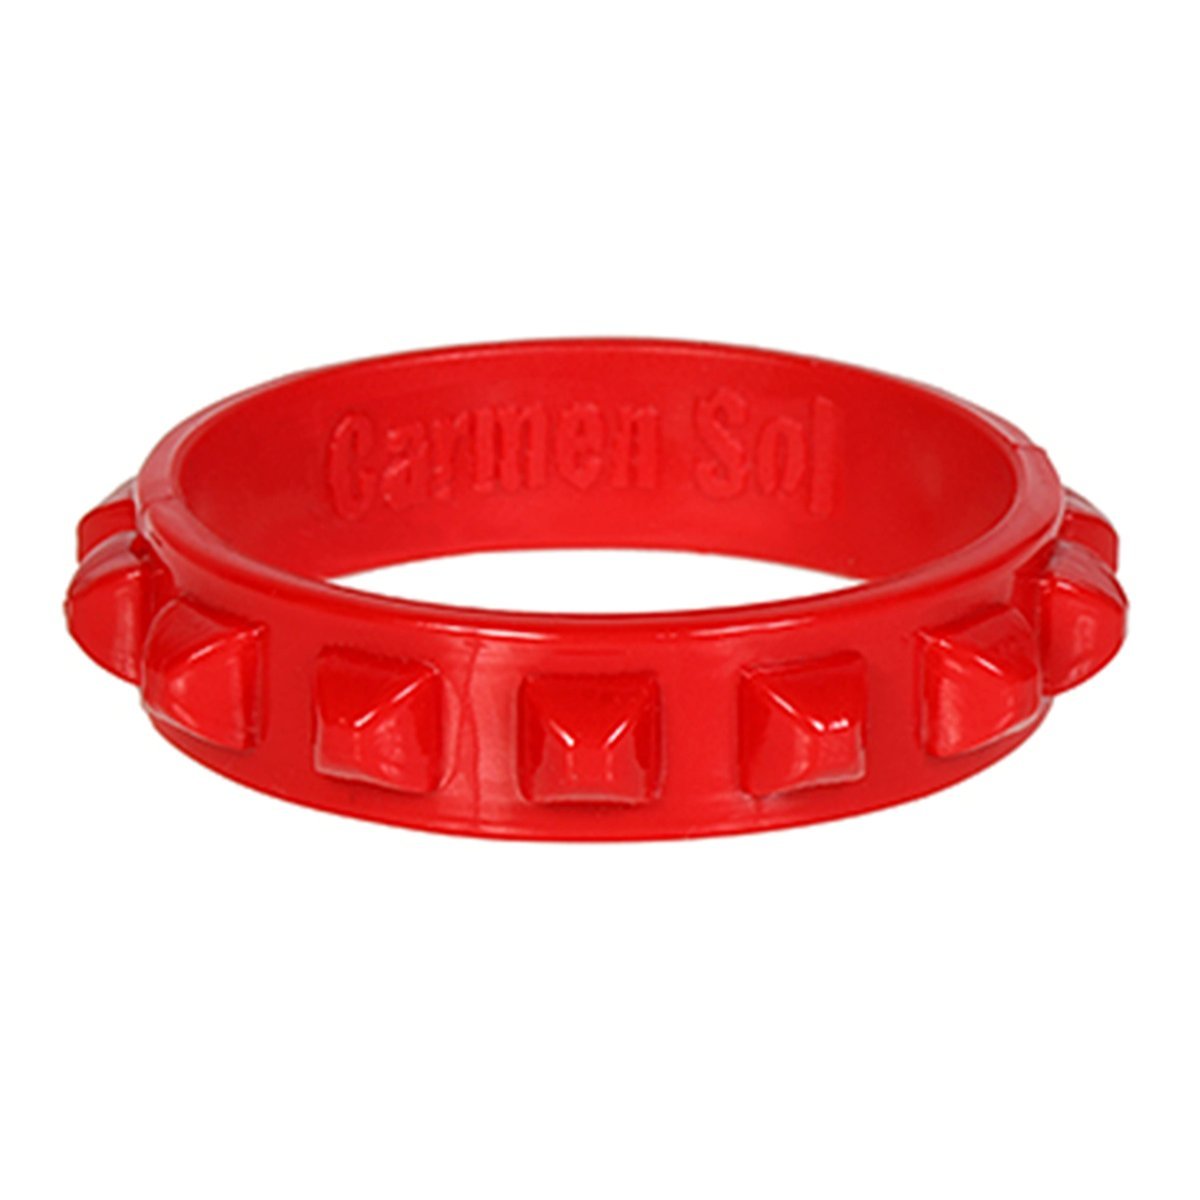 Borchia Bracelet | Red